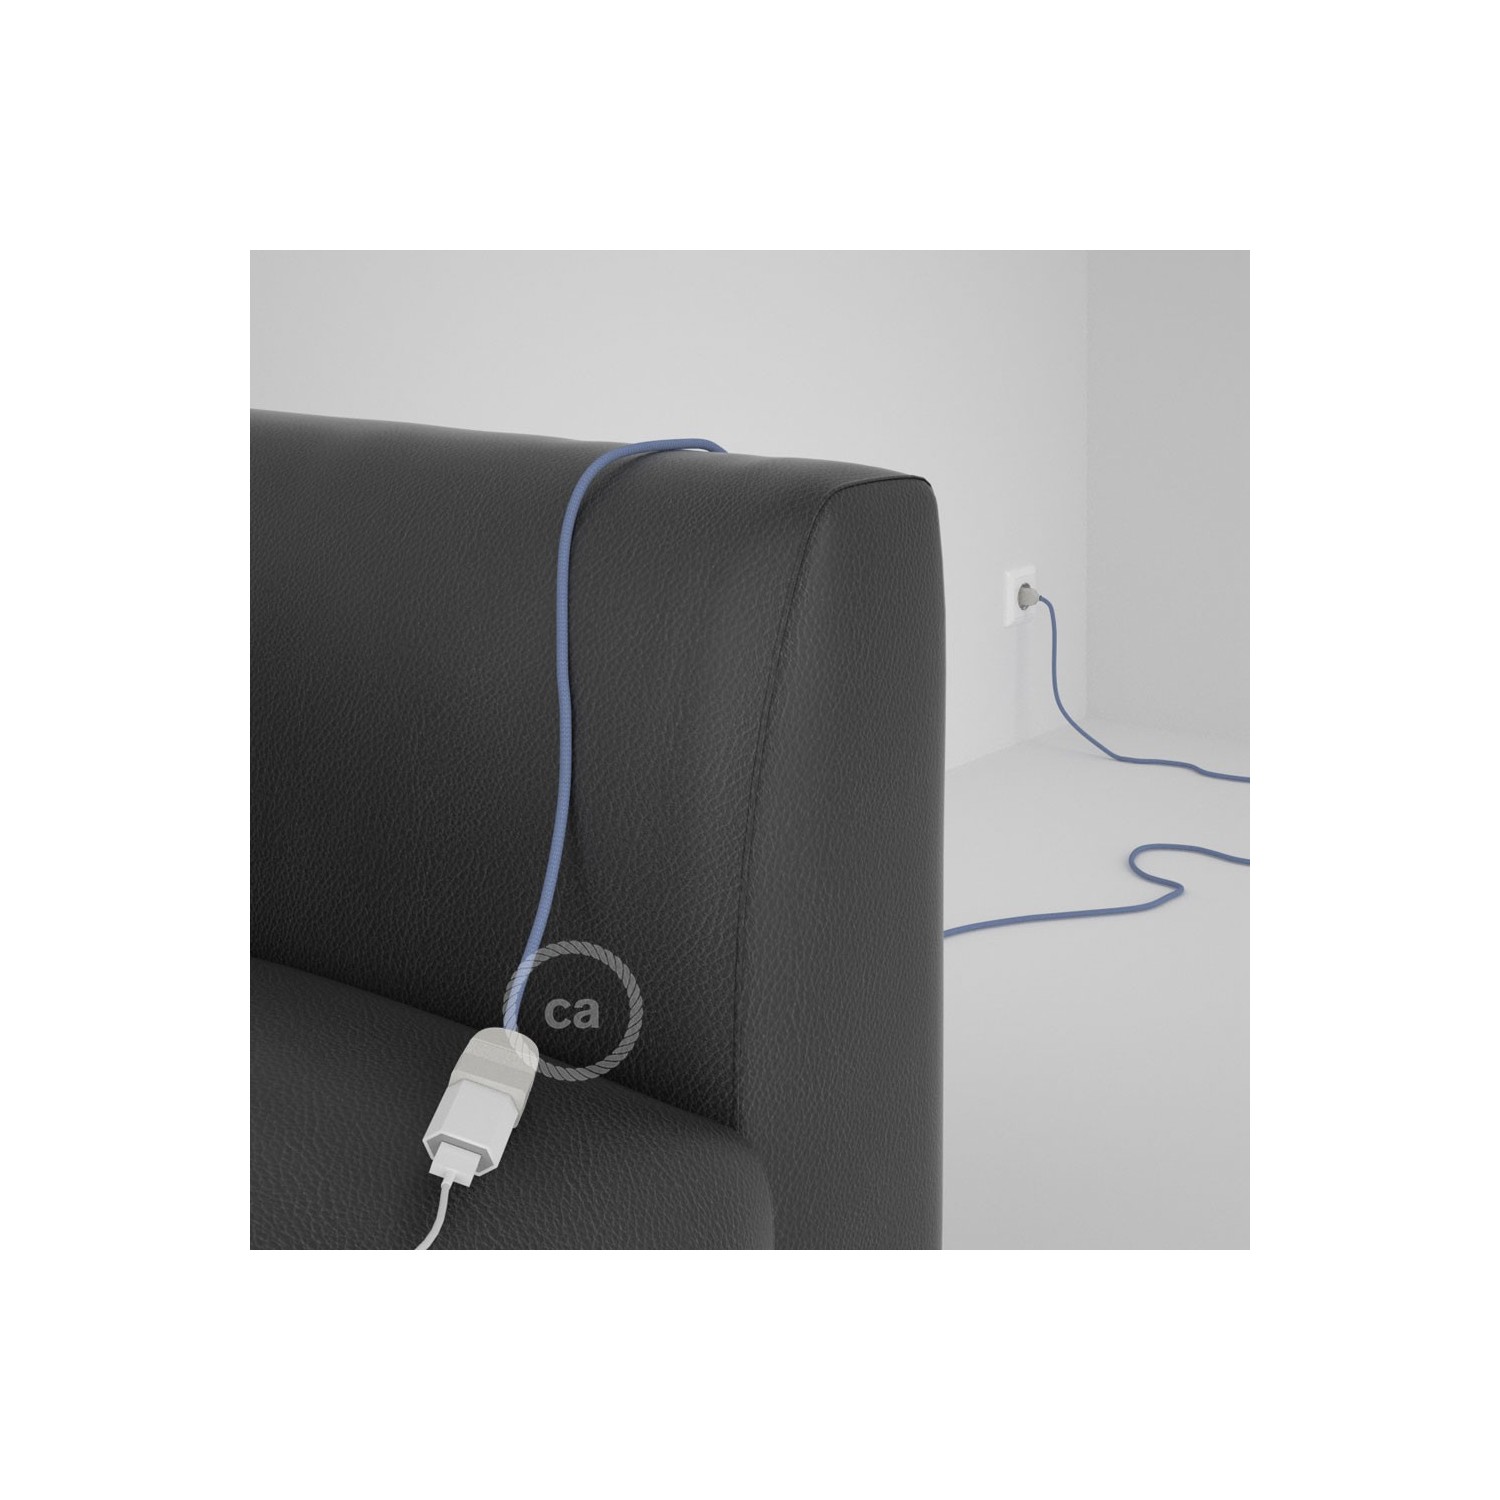 Podaljševalni kabel za napajanje (2P 10A) lila rejon RM07 - Made in Italy